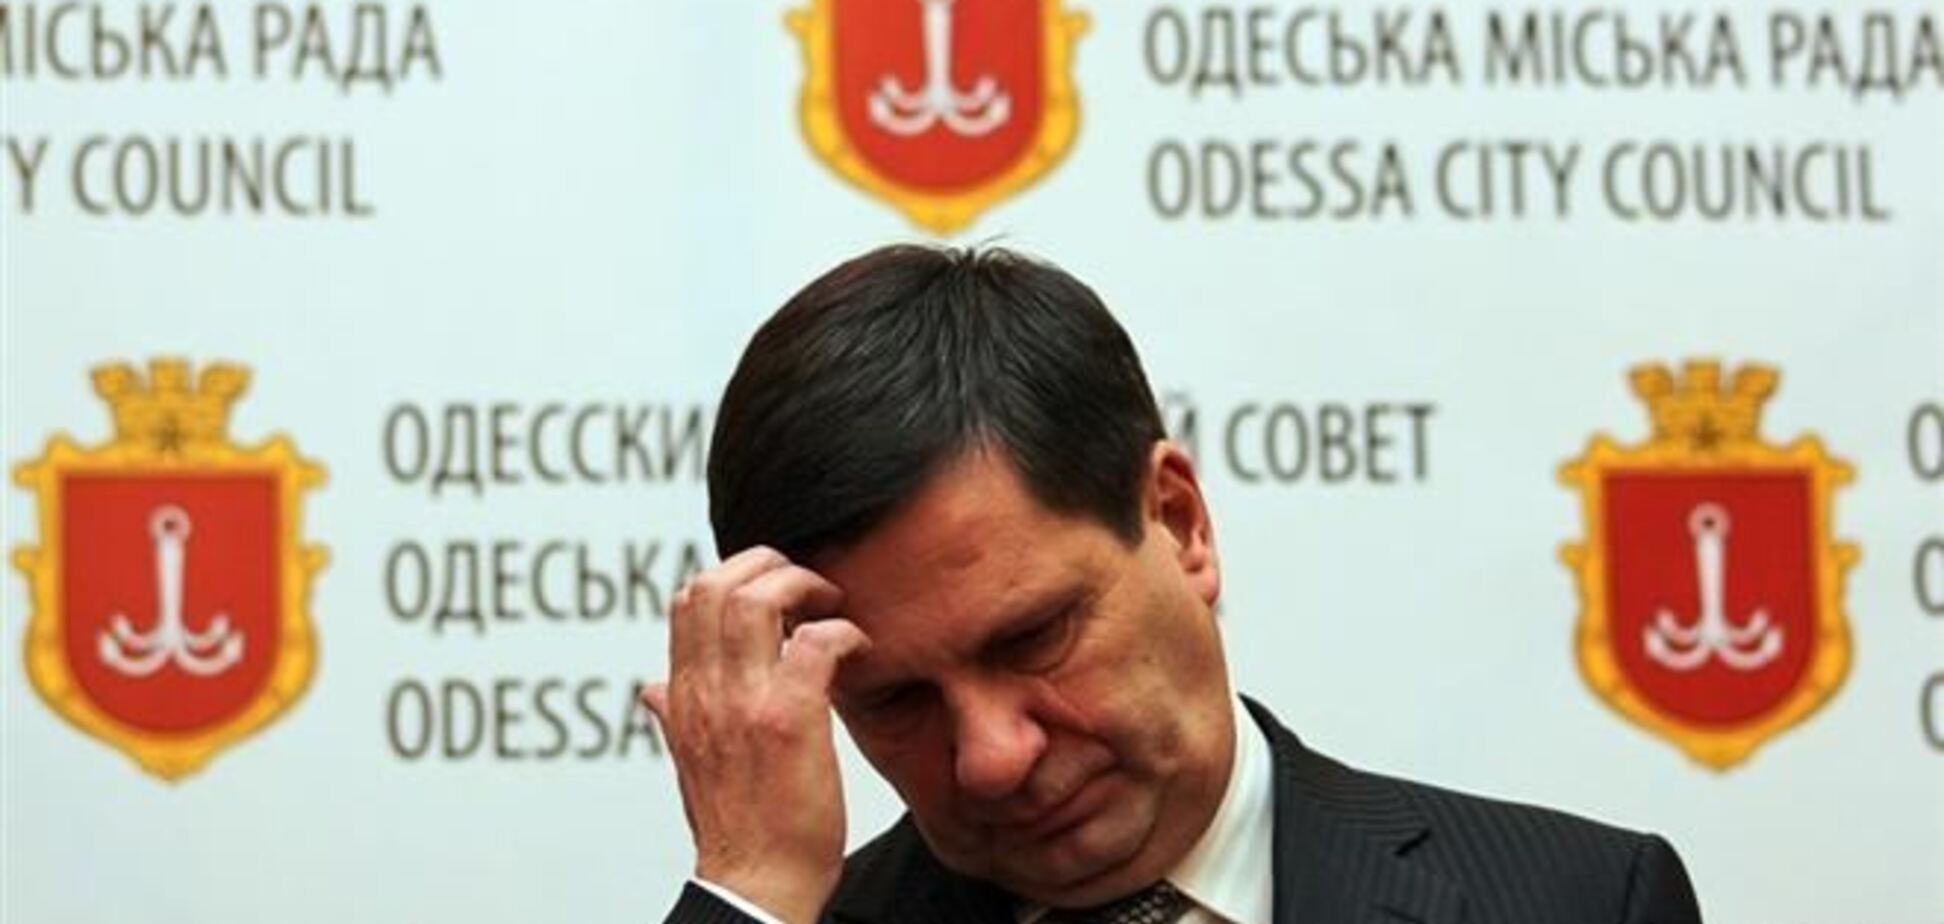 Мэр Одессы подал в отставку